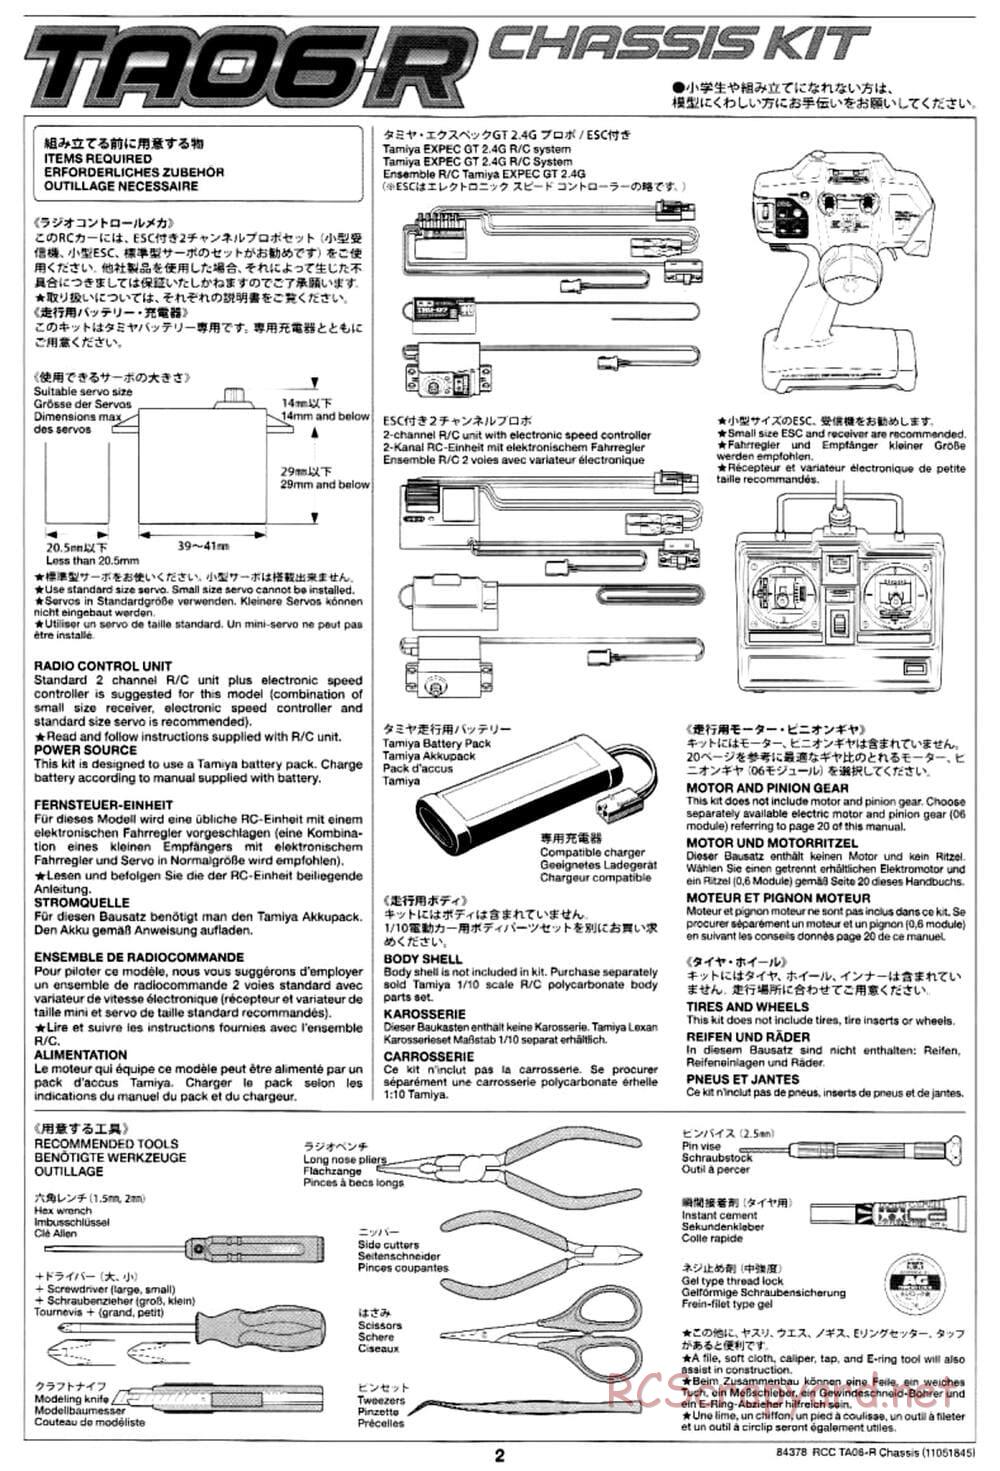 Tamiya - TA06-R Chassis - Manual - Page 2